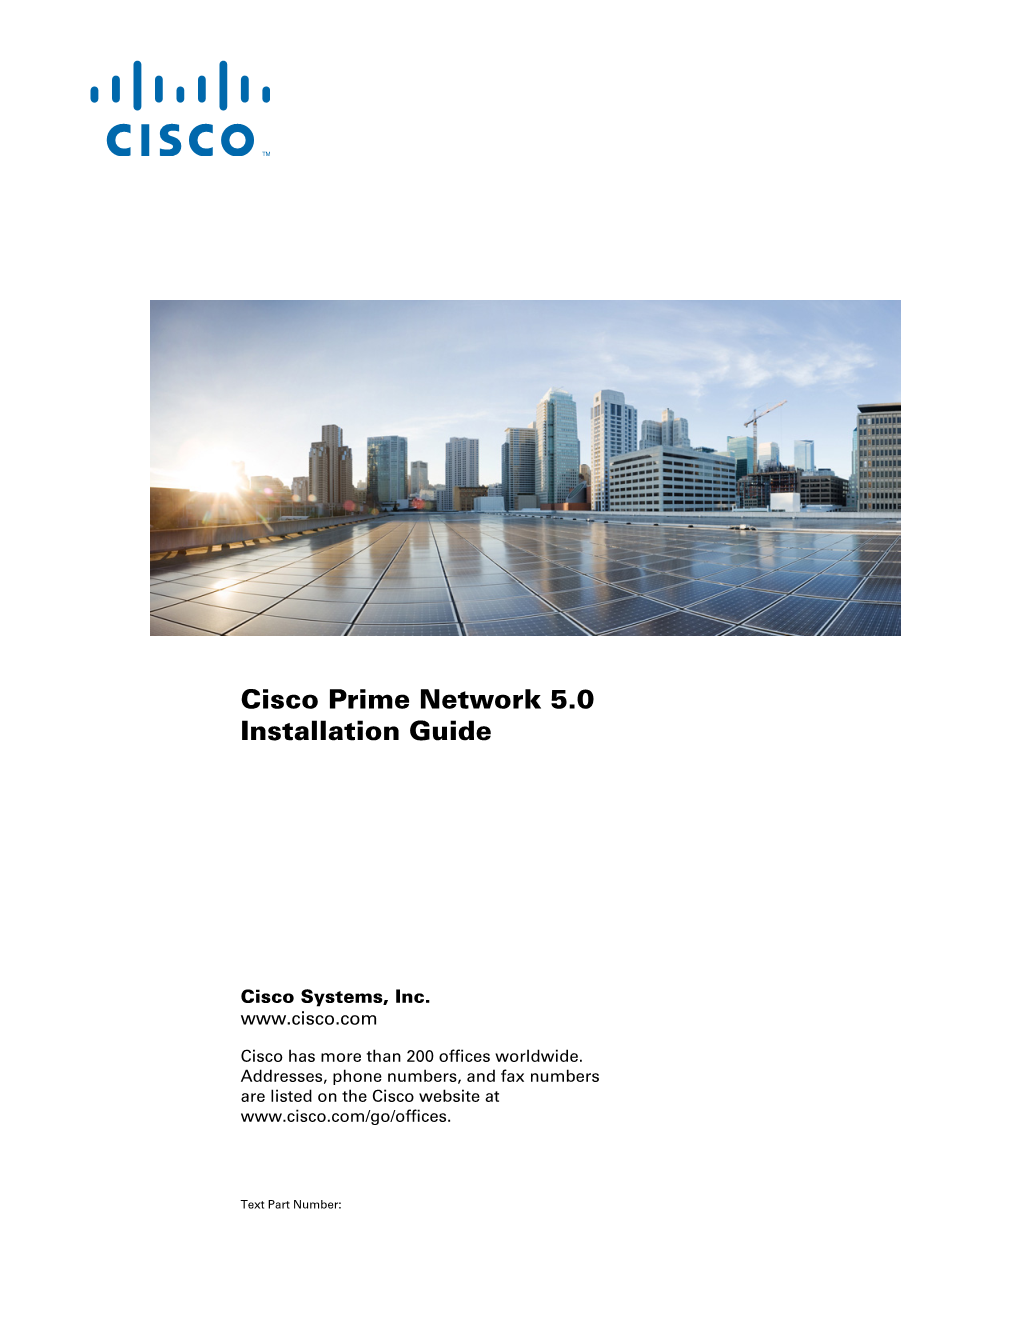 Cisco Prime Network Installation Guide